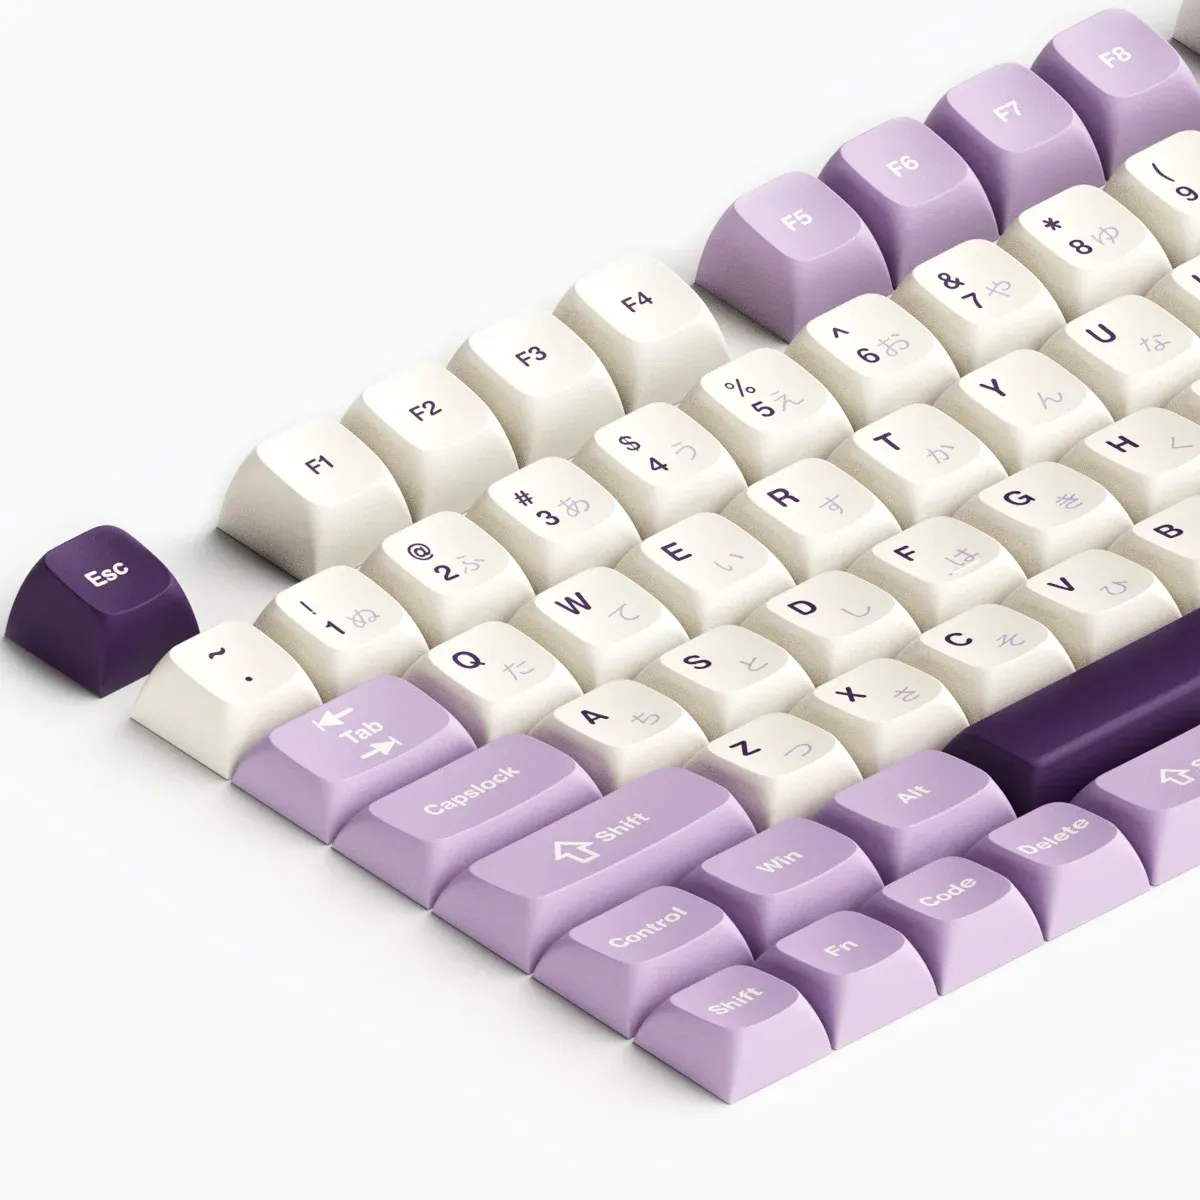 Accessoires 123 touches Keycap PBT personnalisé xvx Profil de touches japonaises violet colorant sublimatio pour GH60 / rk61 / gk64 / womier66 / alt61/87/104 Keyboards